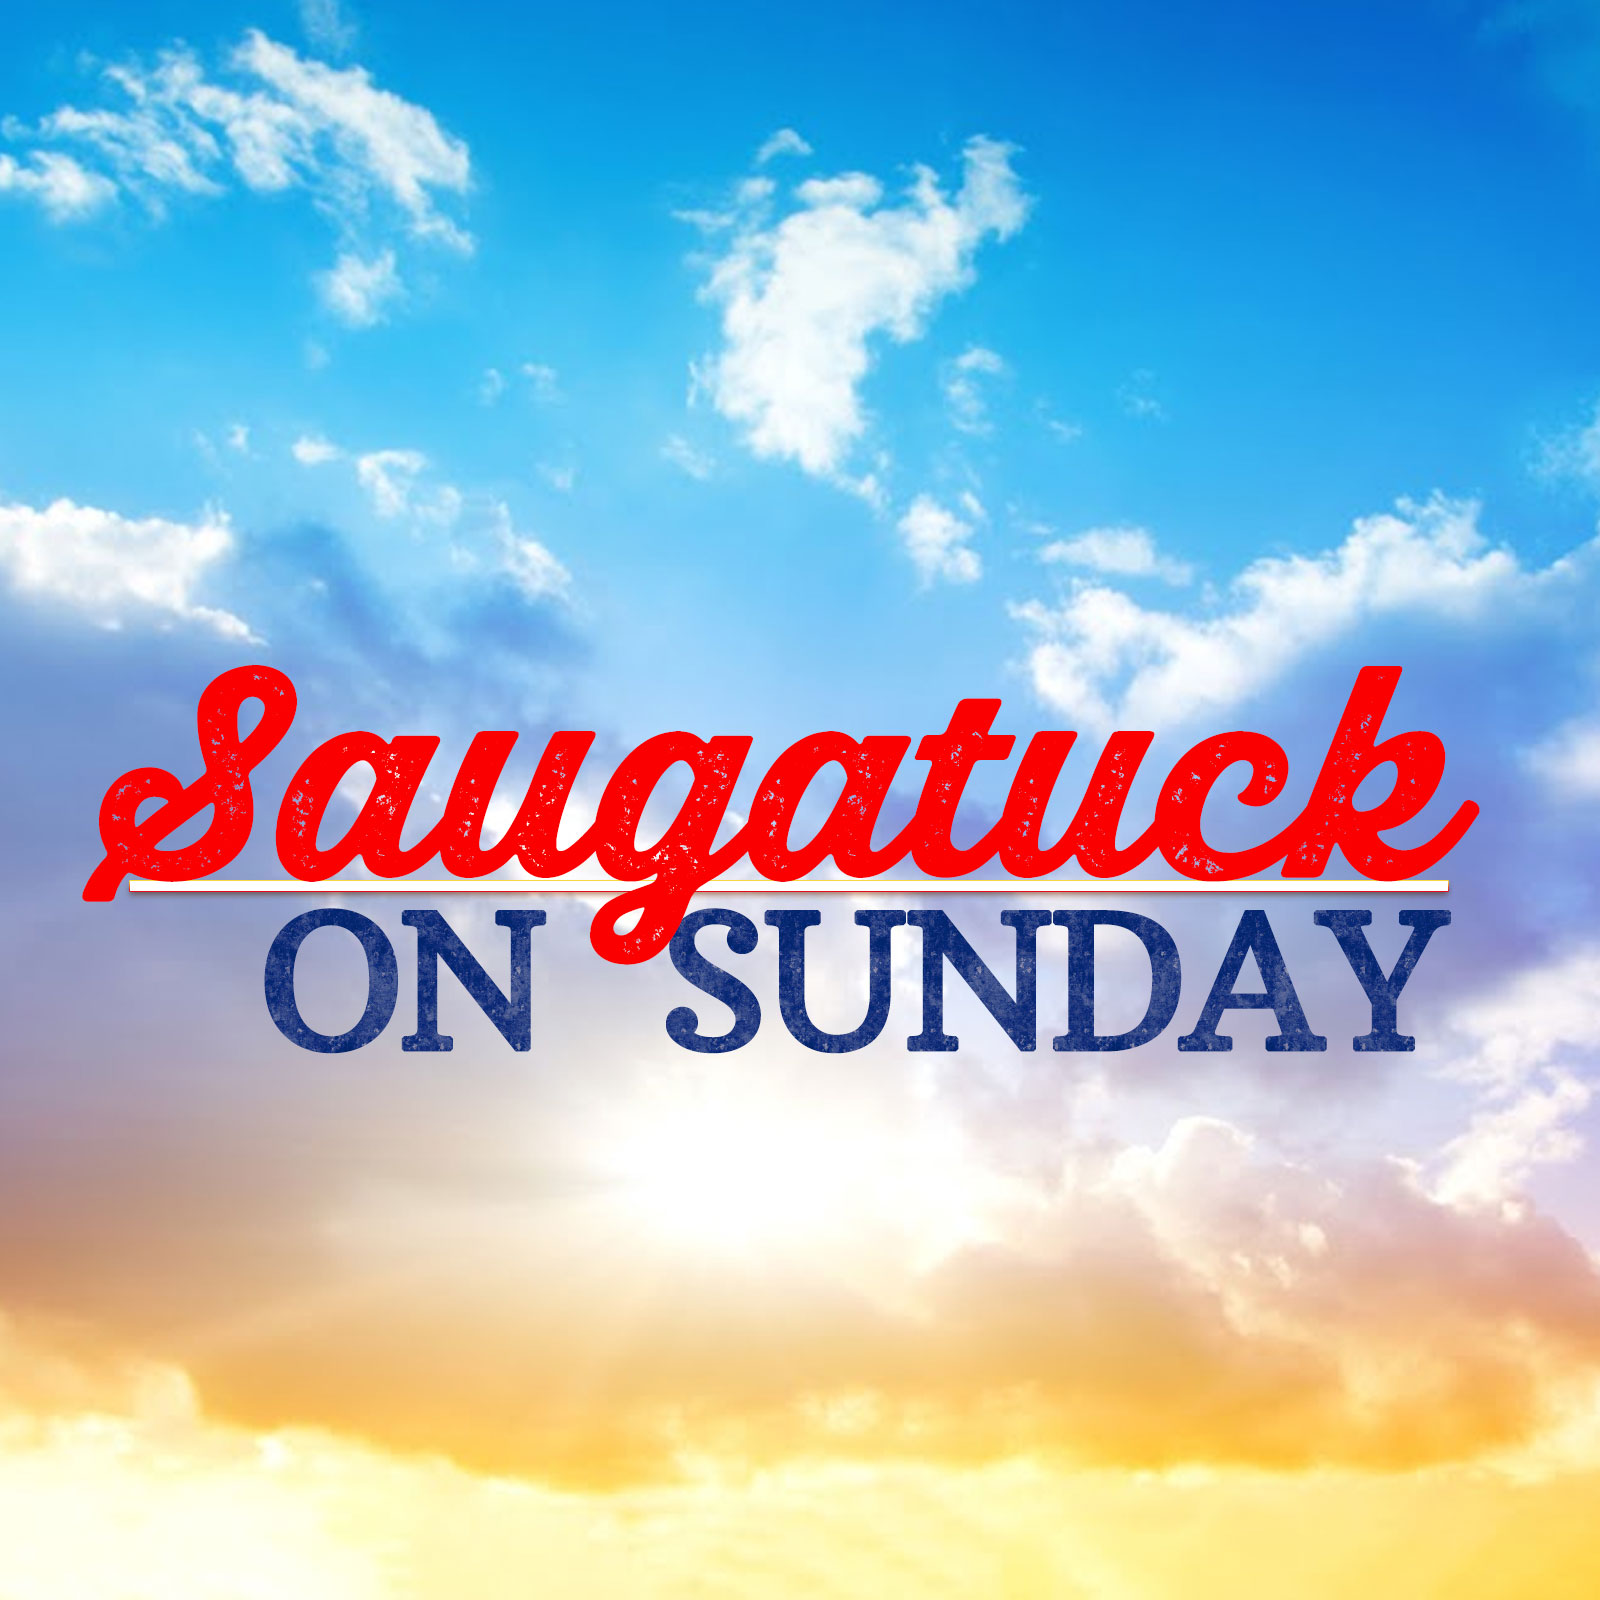 Saugatuck On Sunday